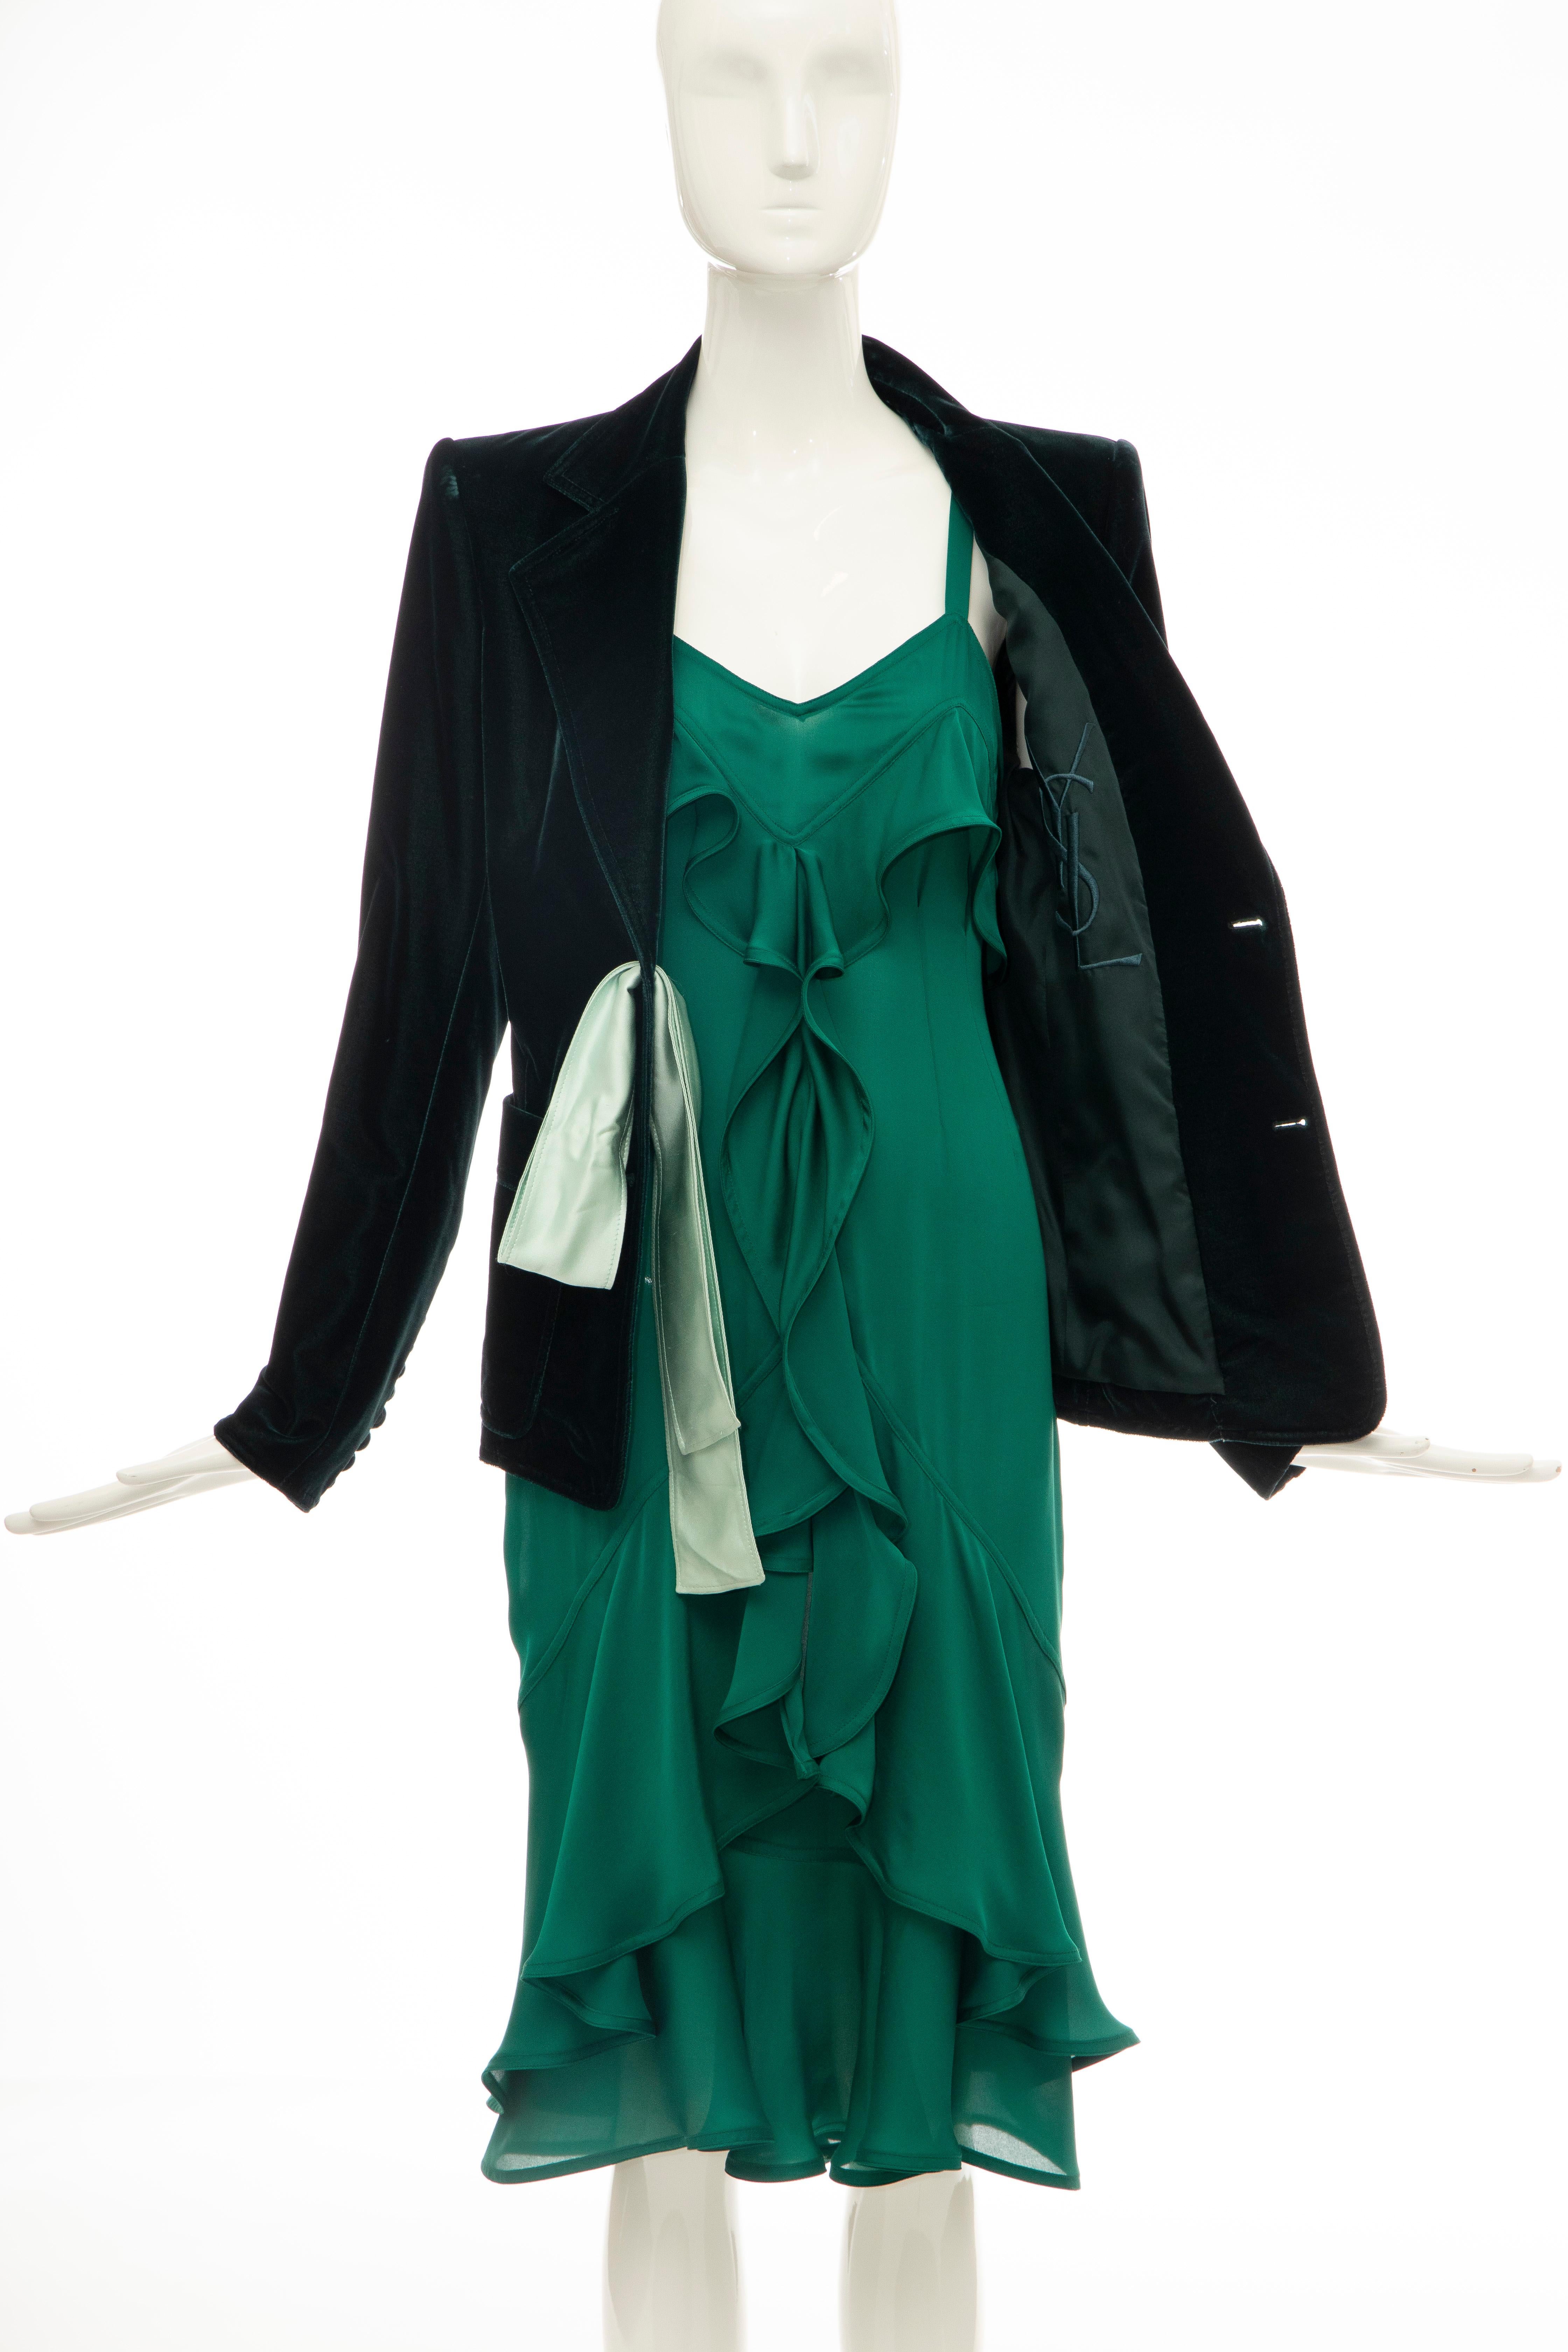 Tom Ford for Yves Saint Laurent Emerald Green Velvet Silk Dress Suit,  Fall 2003 6